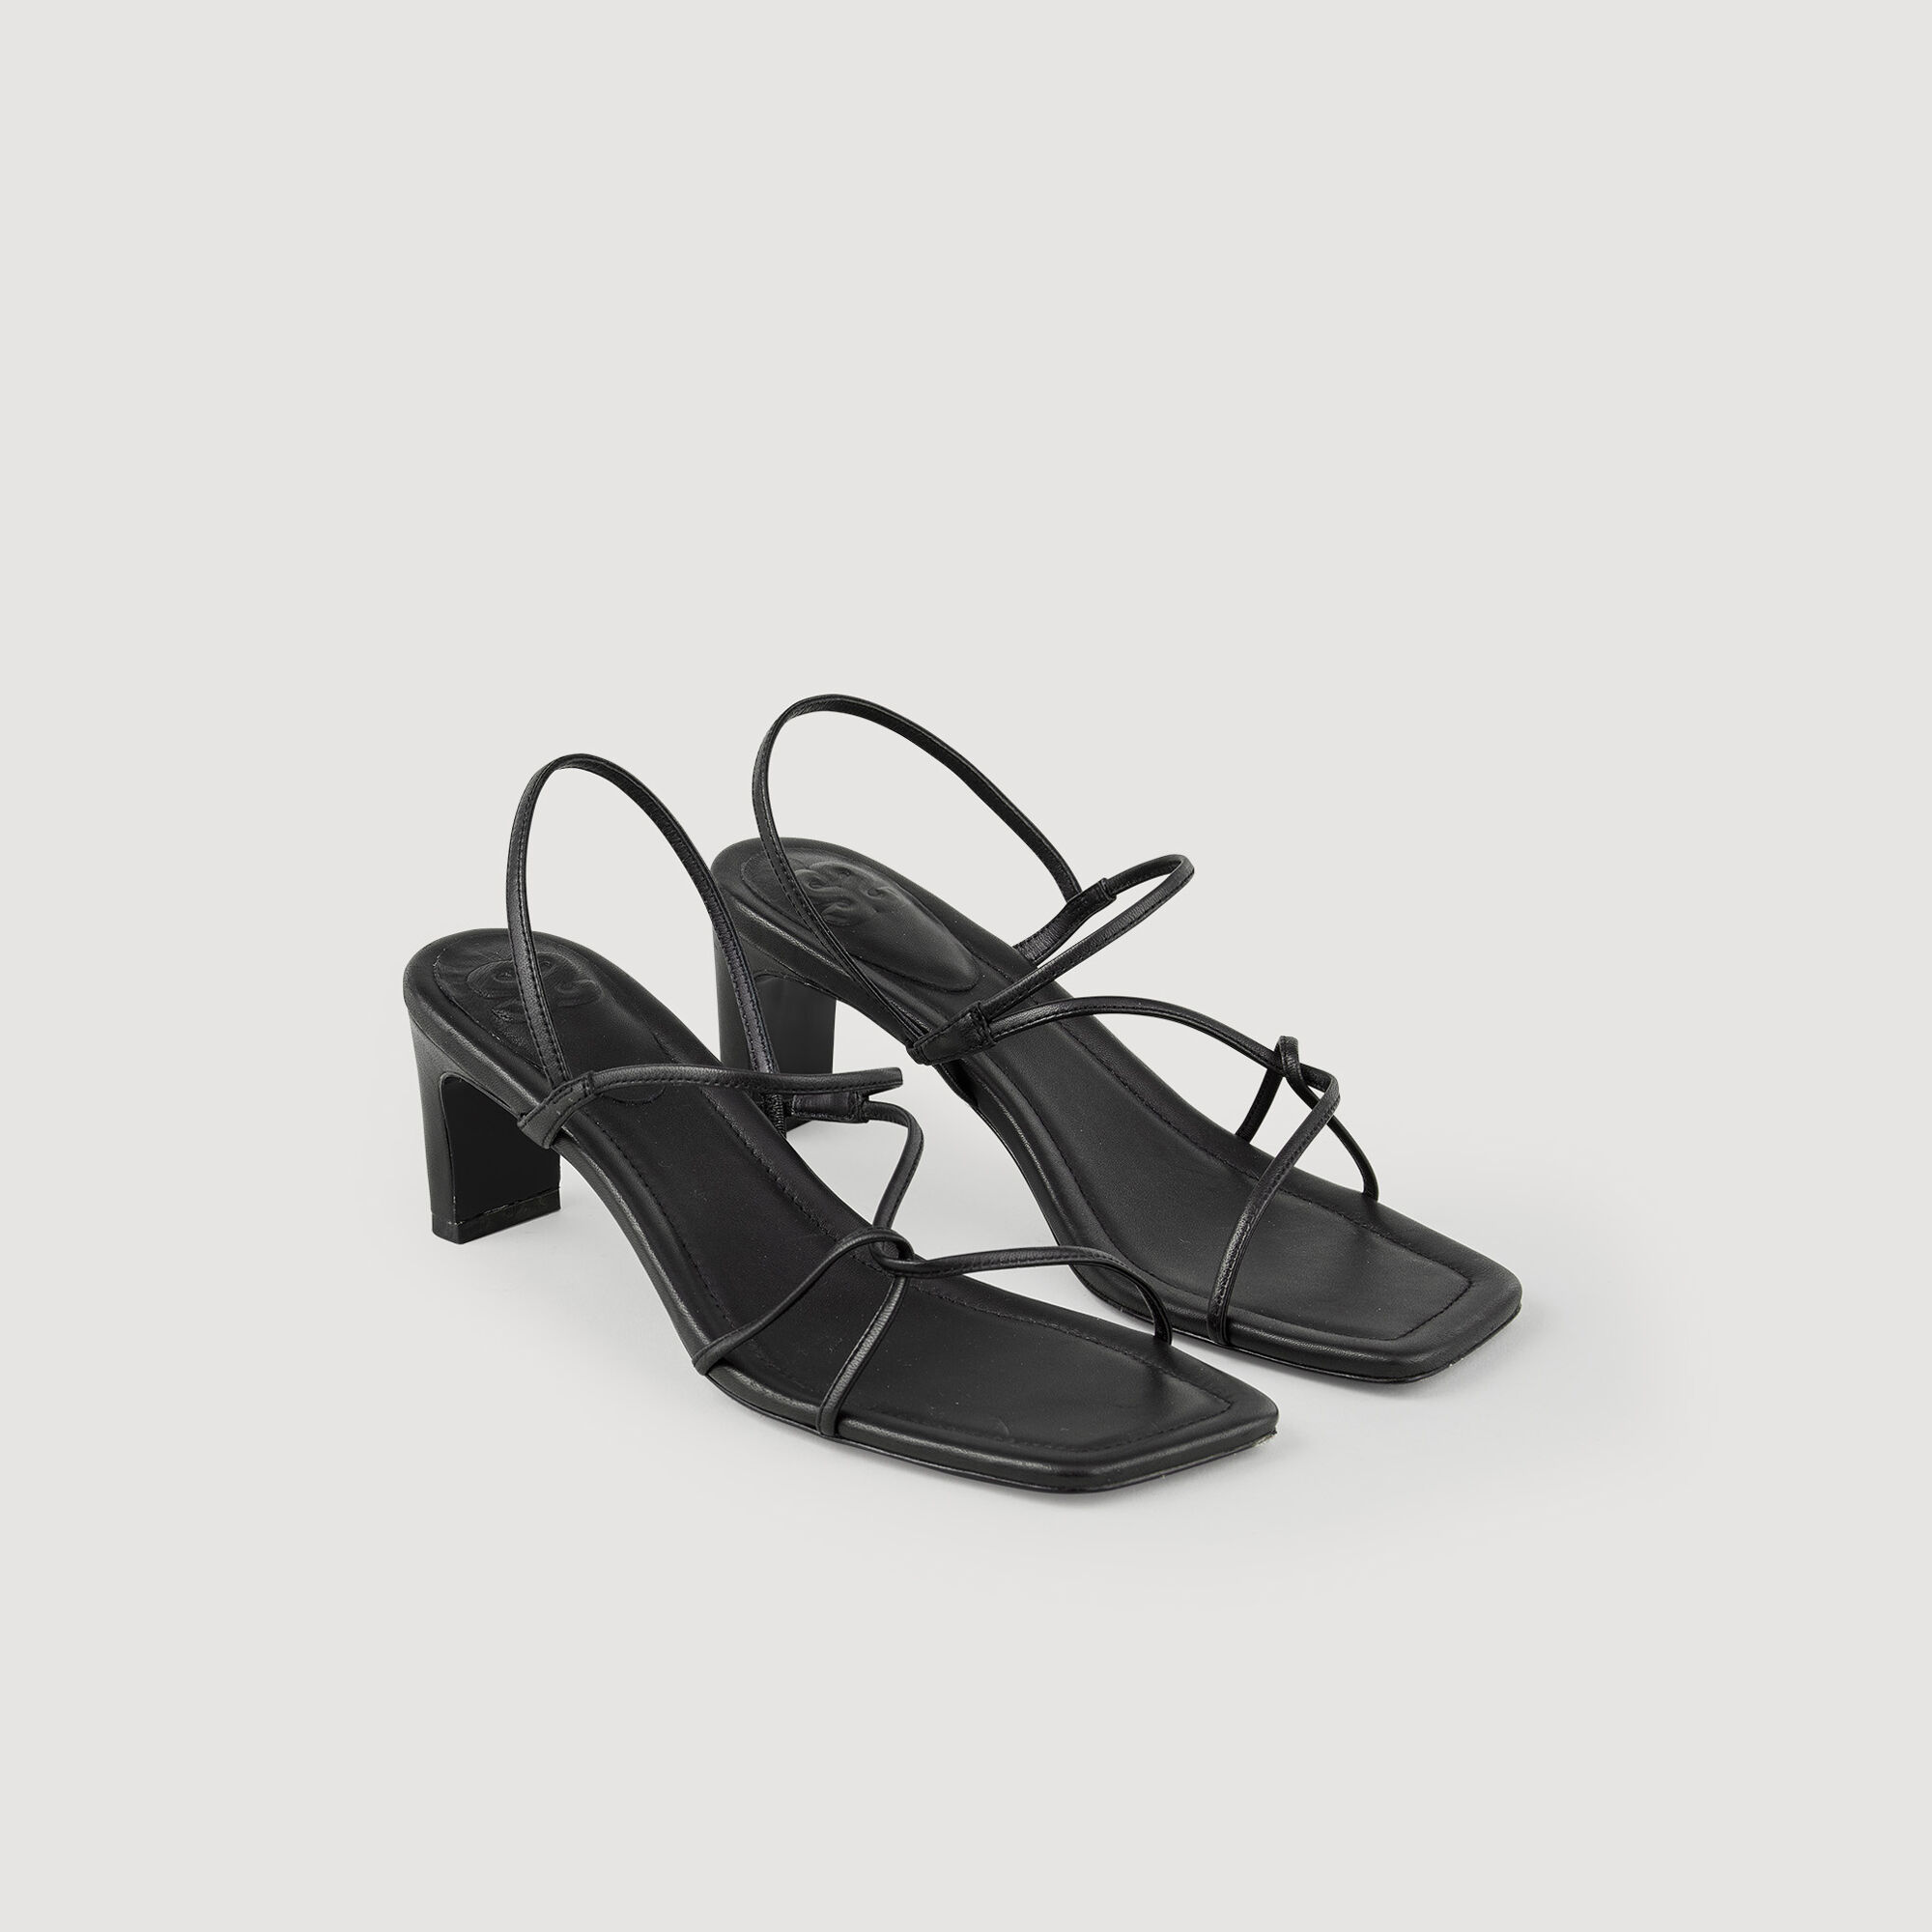 Zara Black Strappy Leather Kitten Heel Sandals, Women's Fashion, Footwear,  Sandals on Carousell